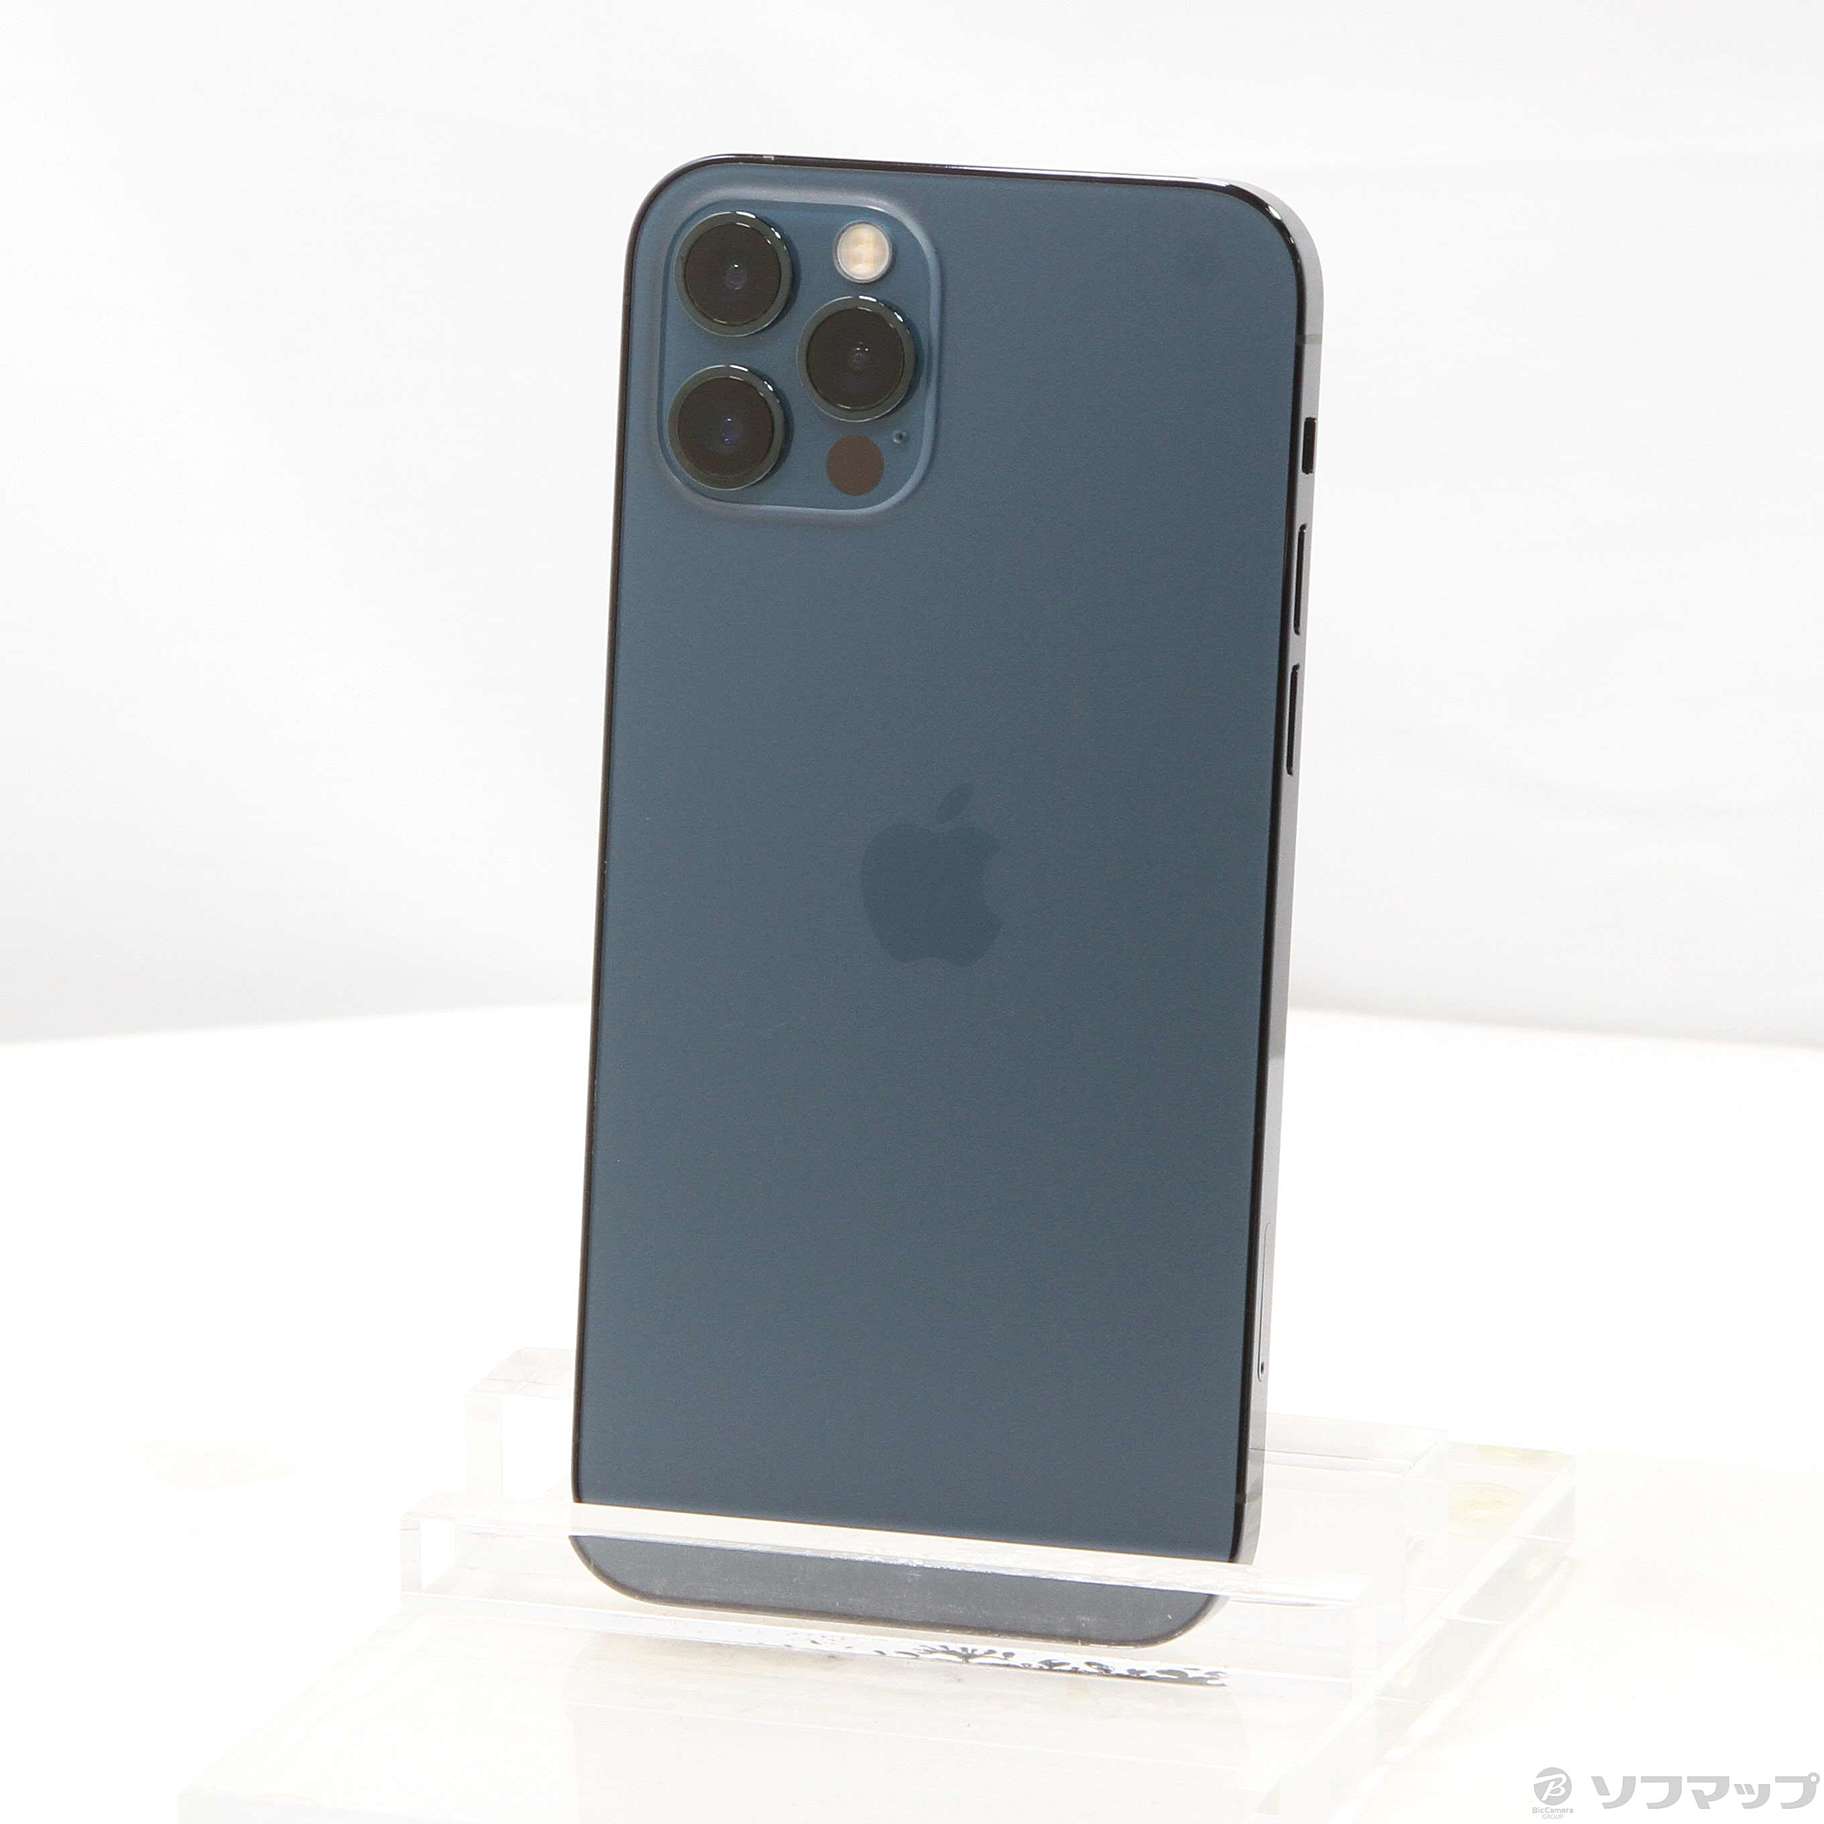 【液晶ヒビ】iPhone12 Pro 256GB パシフィックブルー SIM解除